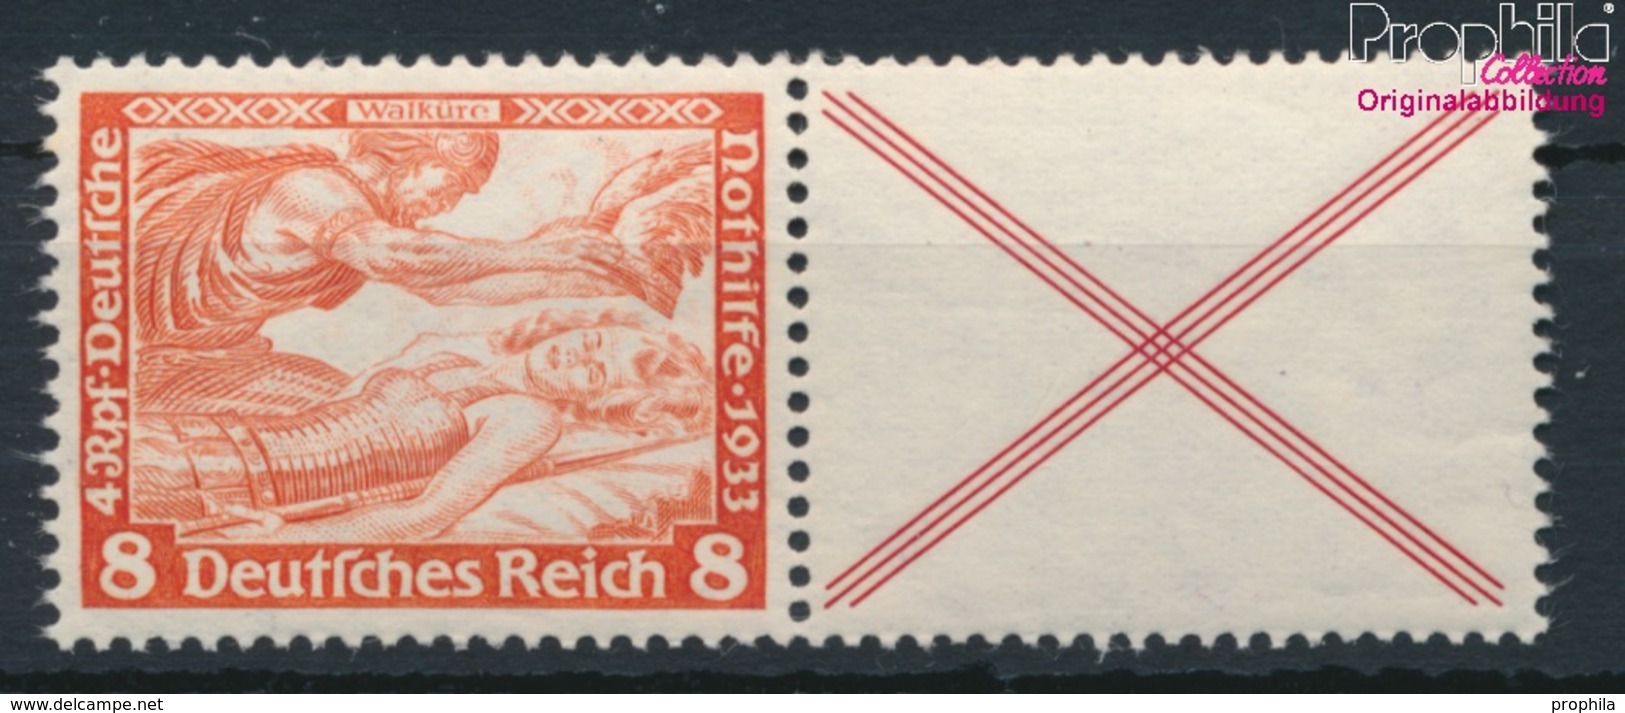 Deutsches Reich W53 Postfrisch 1933 Nothilfe-Wagner (9019218 - Zusammendrucke